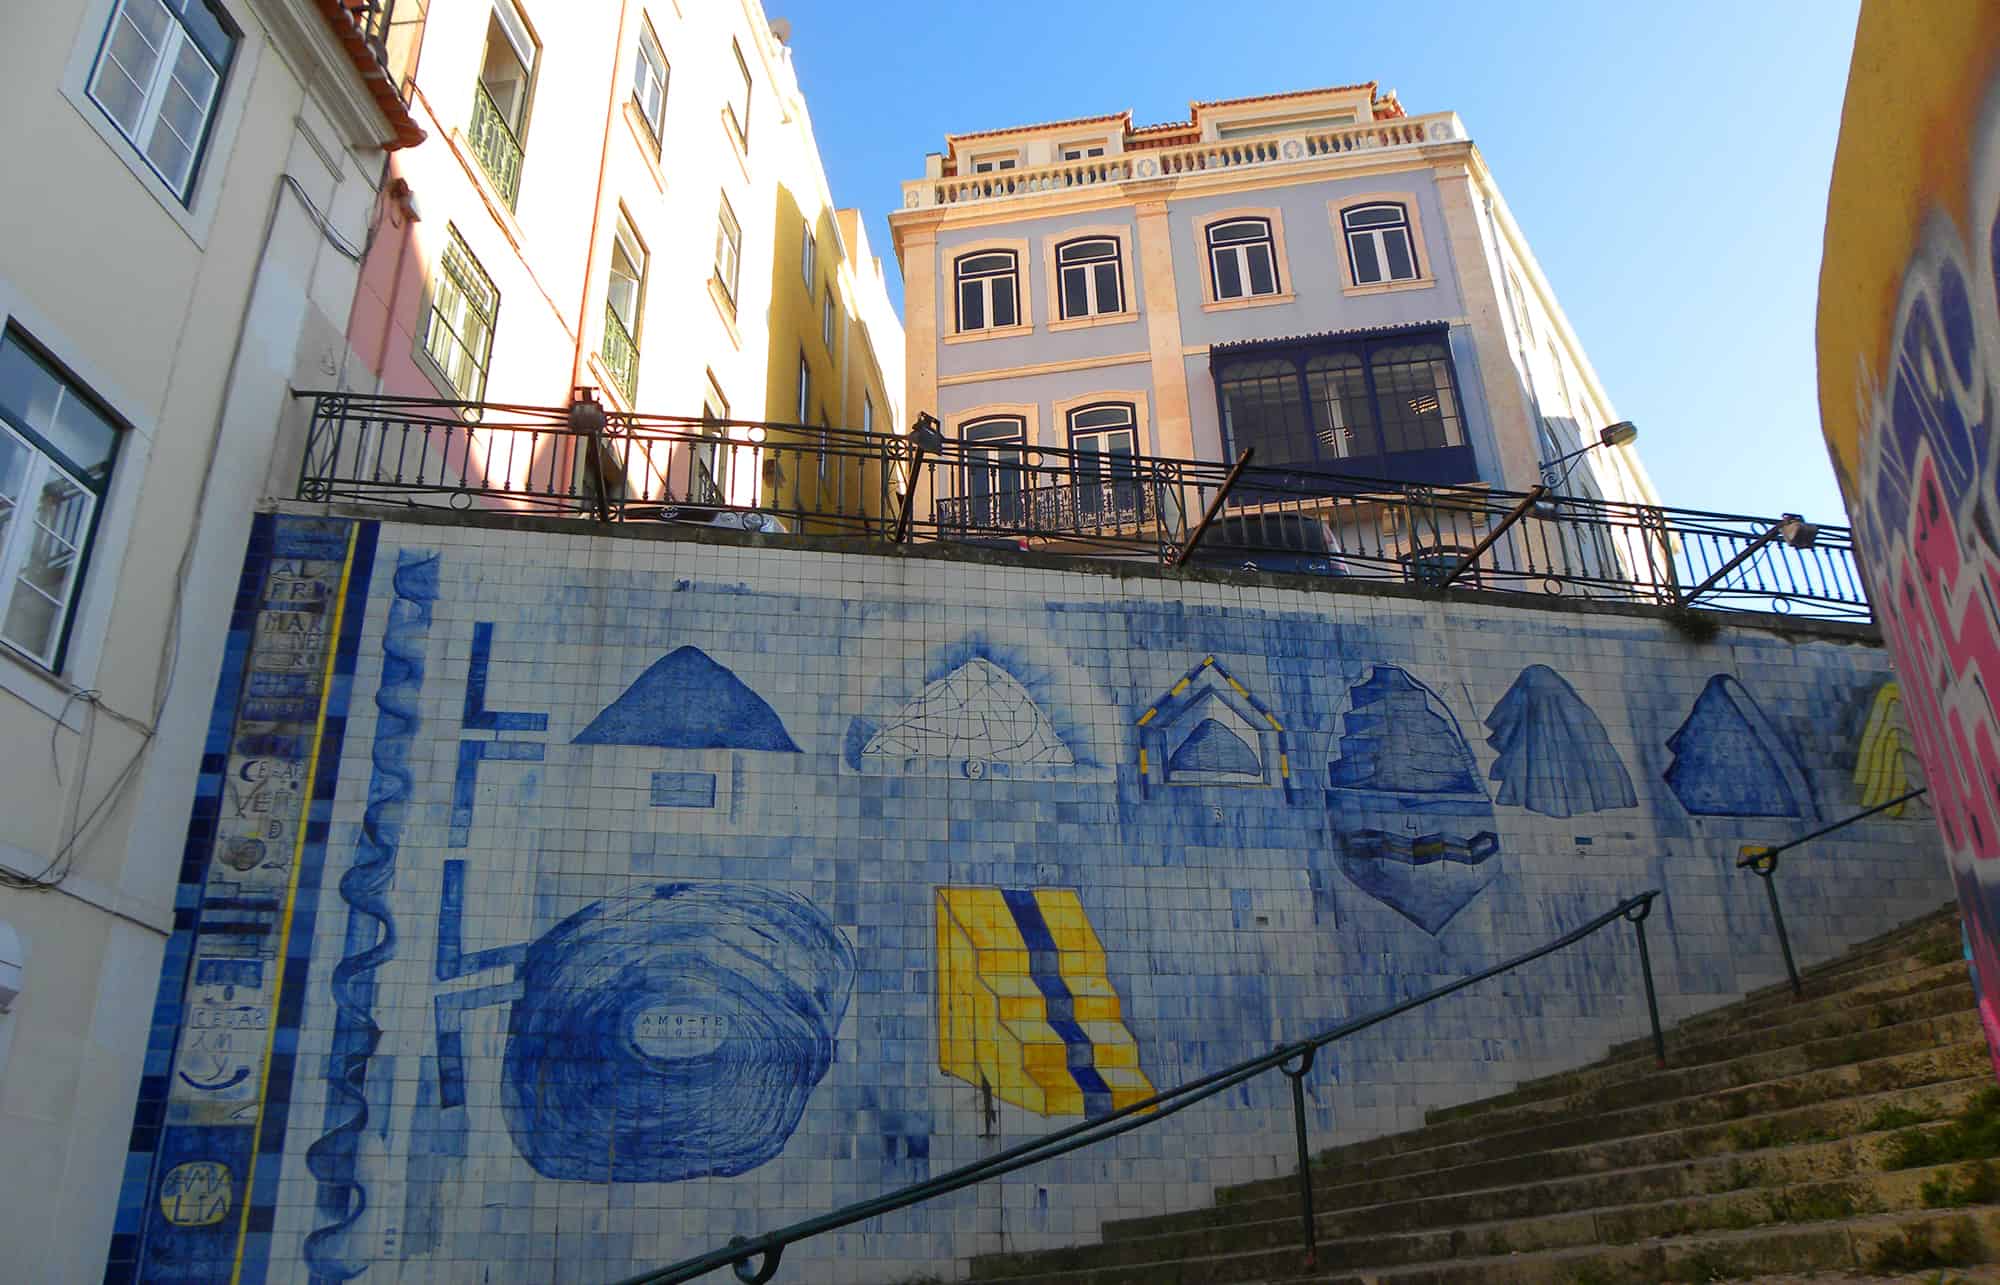 tile mural in Lisbon